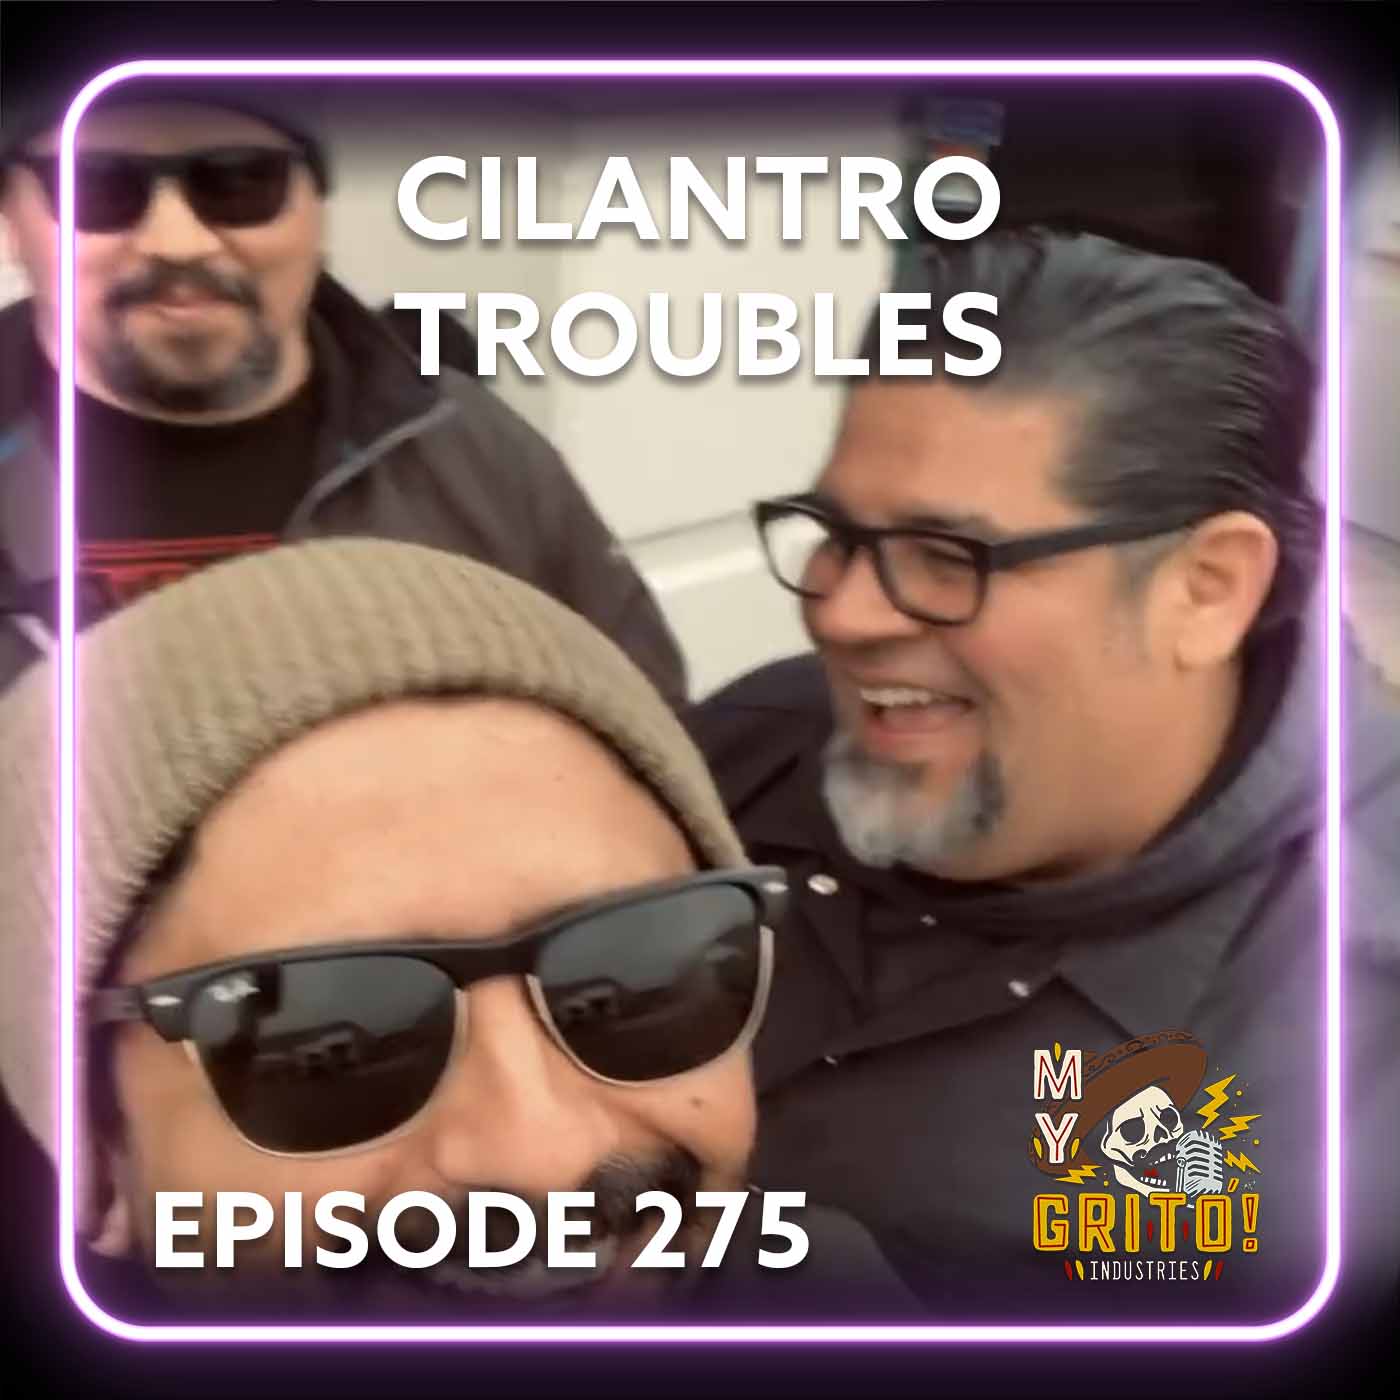 Episode 275 – Cilantro Troubles